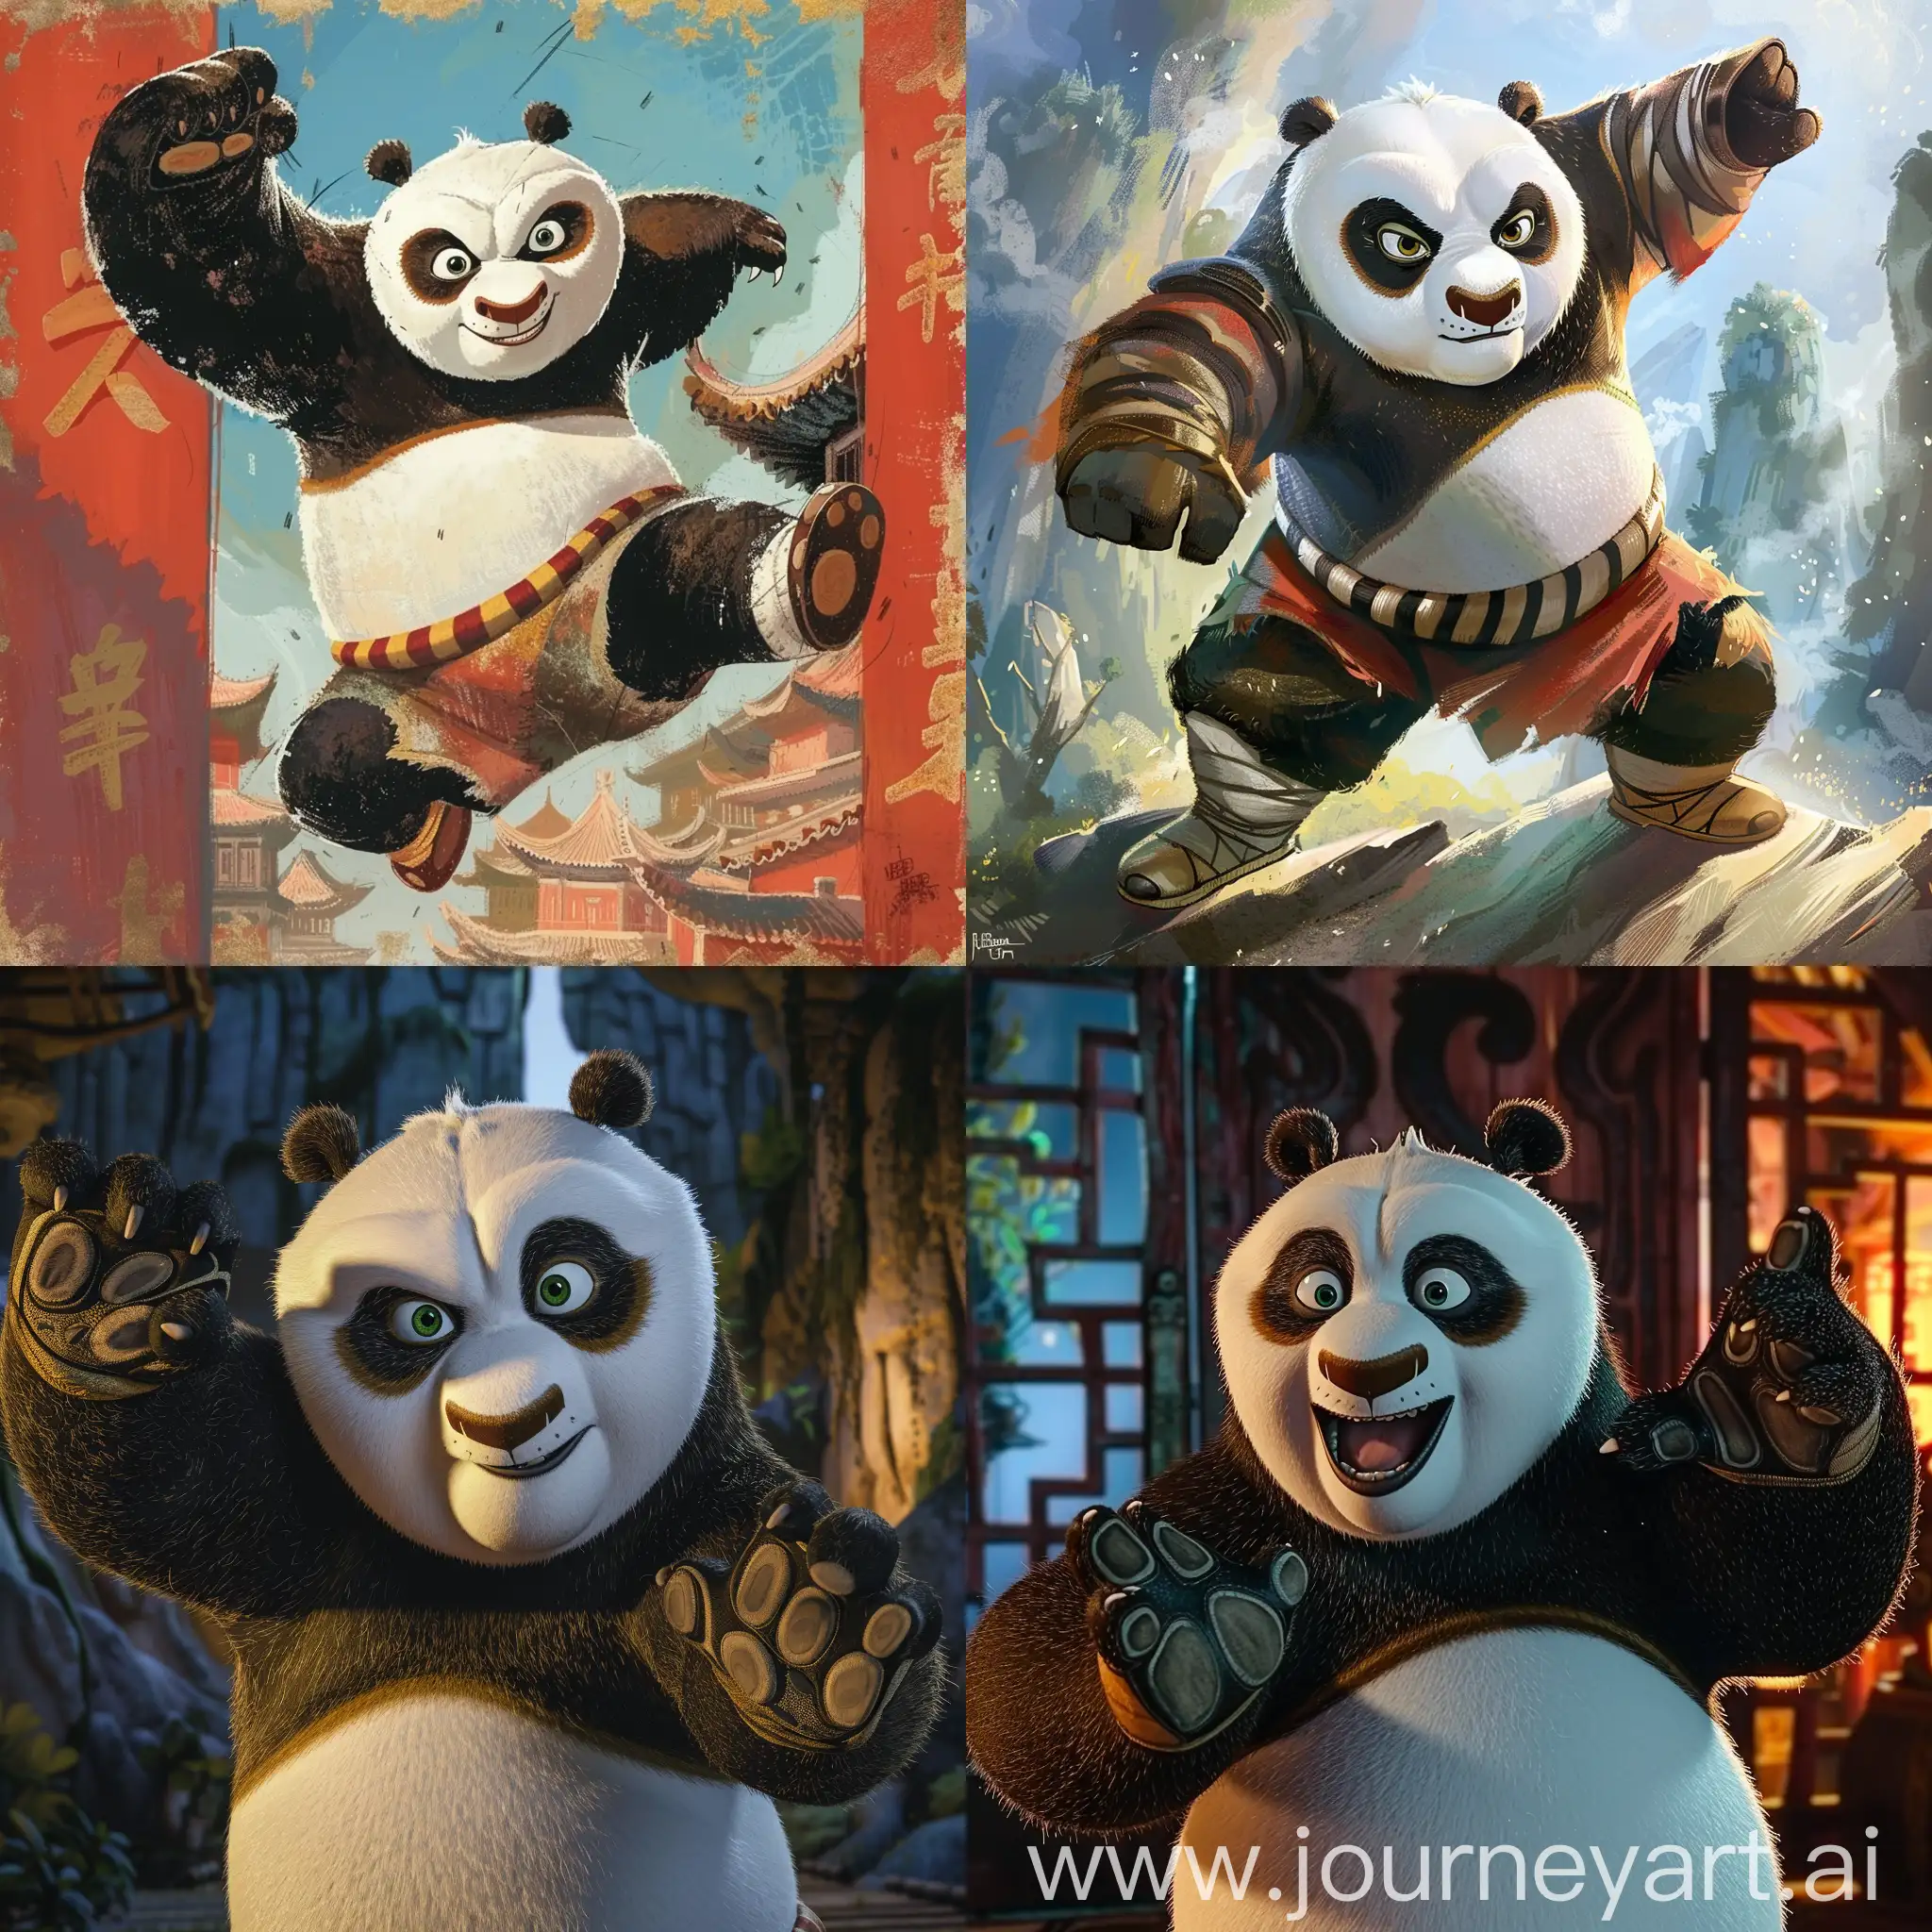 Diabolical-Panda-Kung-Fu-Master-A-Fiery-Display-of-Martial-Arts-Skill